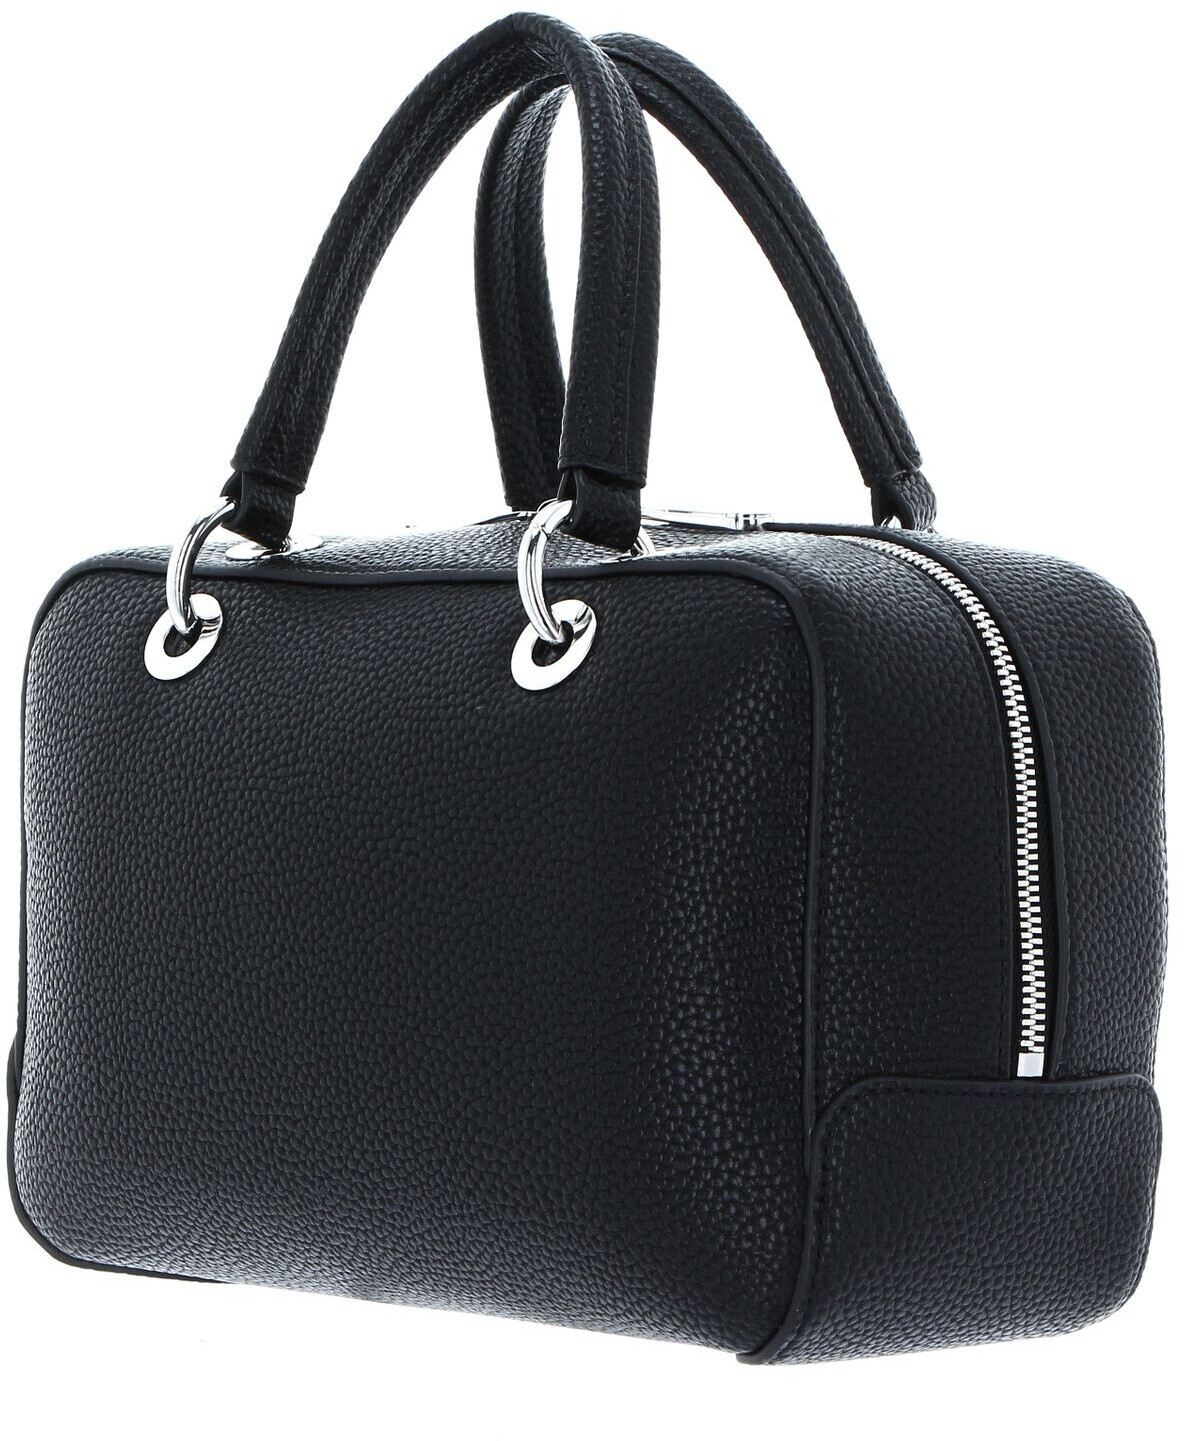 Buy Tommy Hilfiger TH Essence Medium Duffle Bag black from £74.25 ...